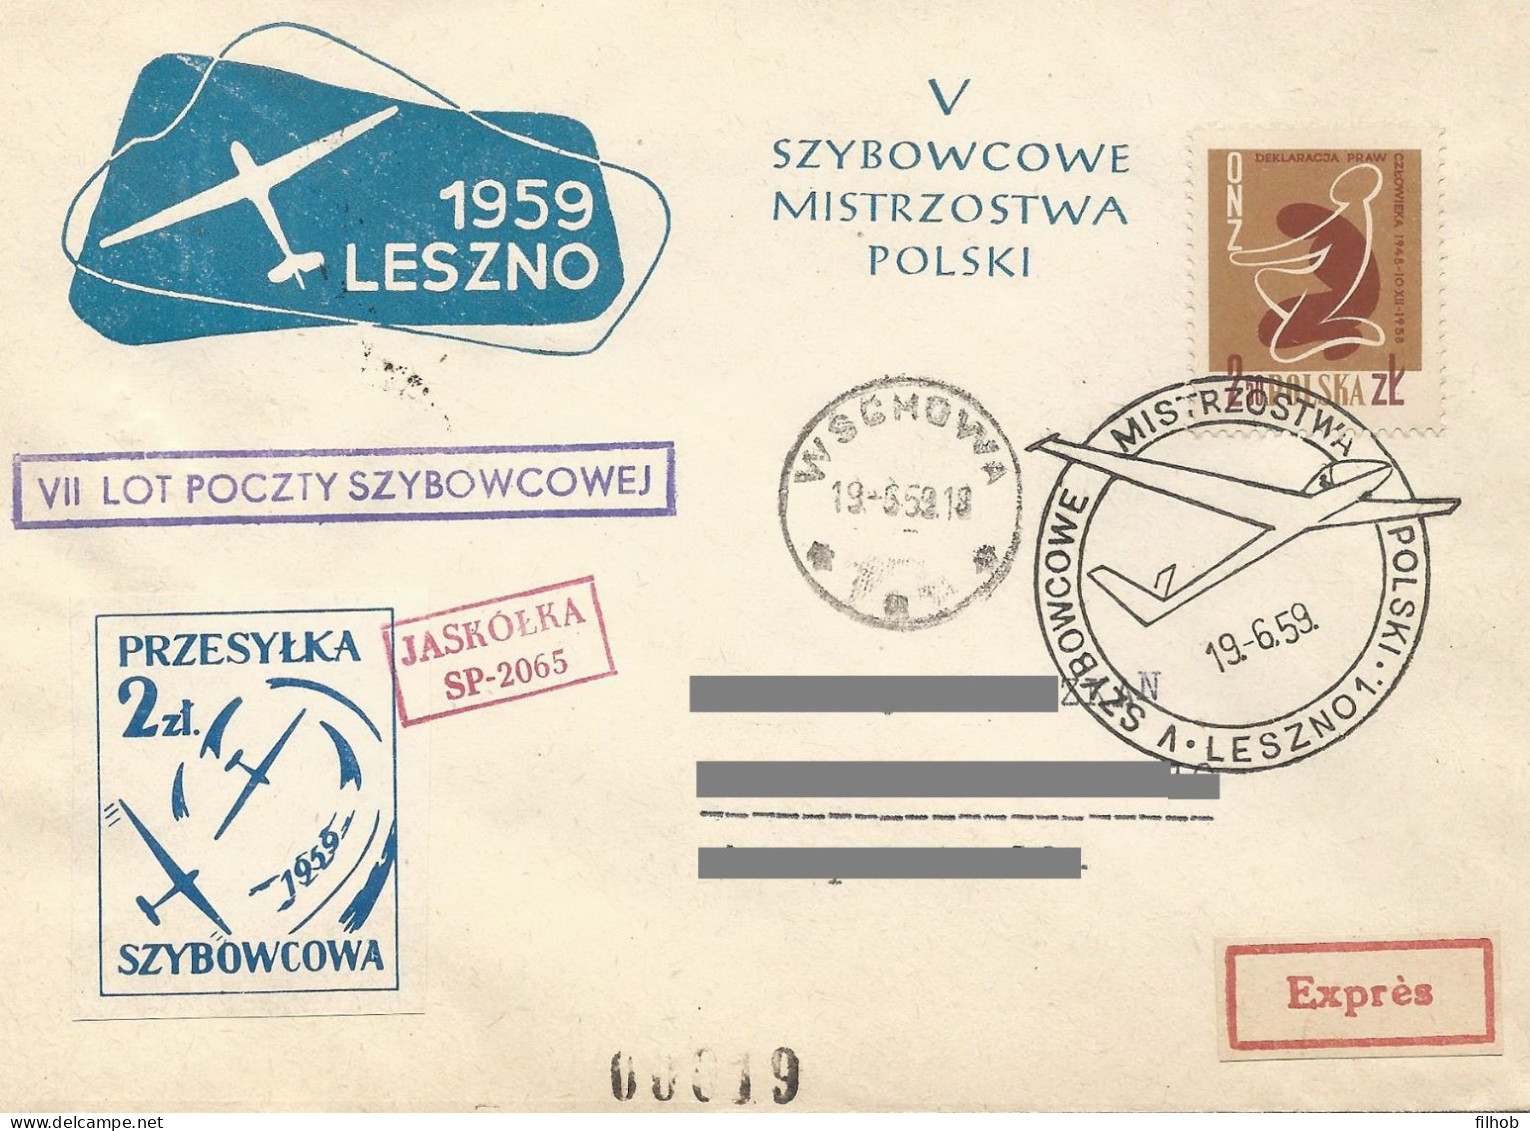 Poland Post - Glider PSZ.1959.lesz.06: Sport Leszno Polish Championships Jaskolka - Gliders